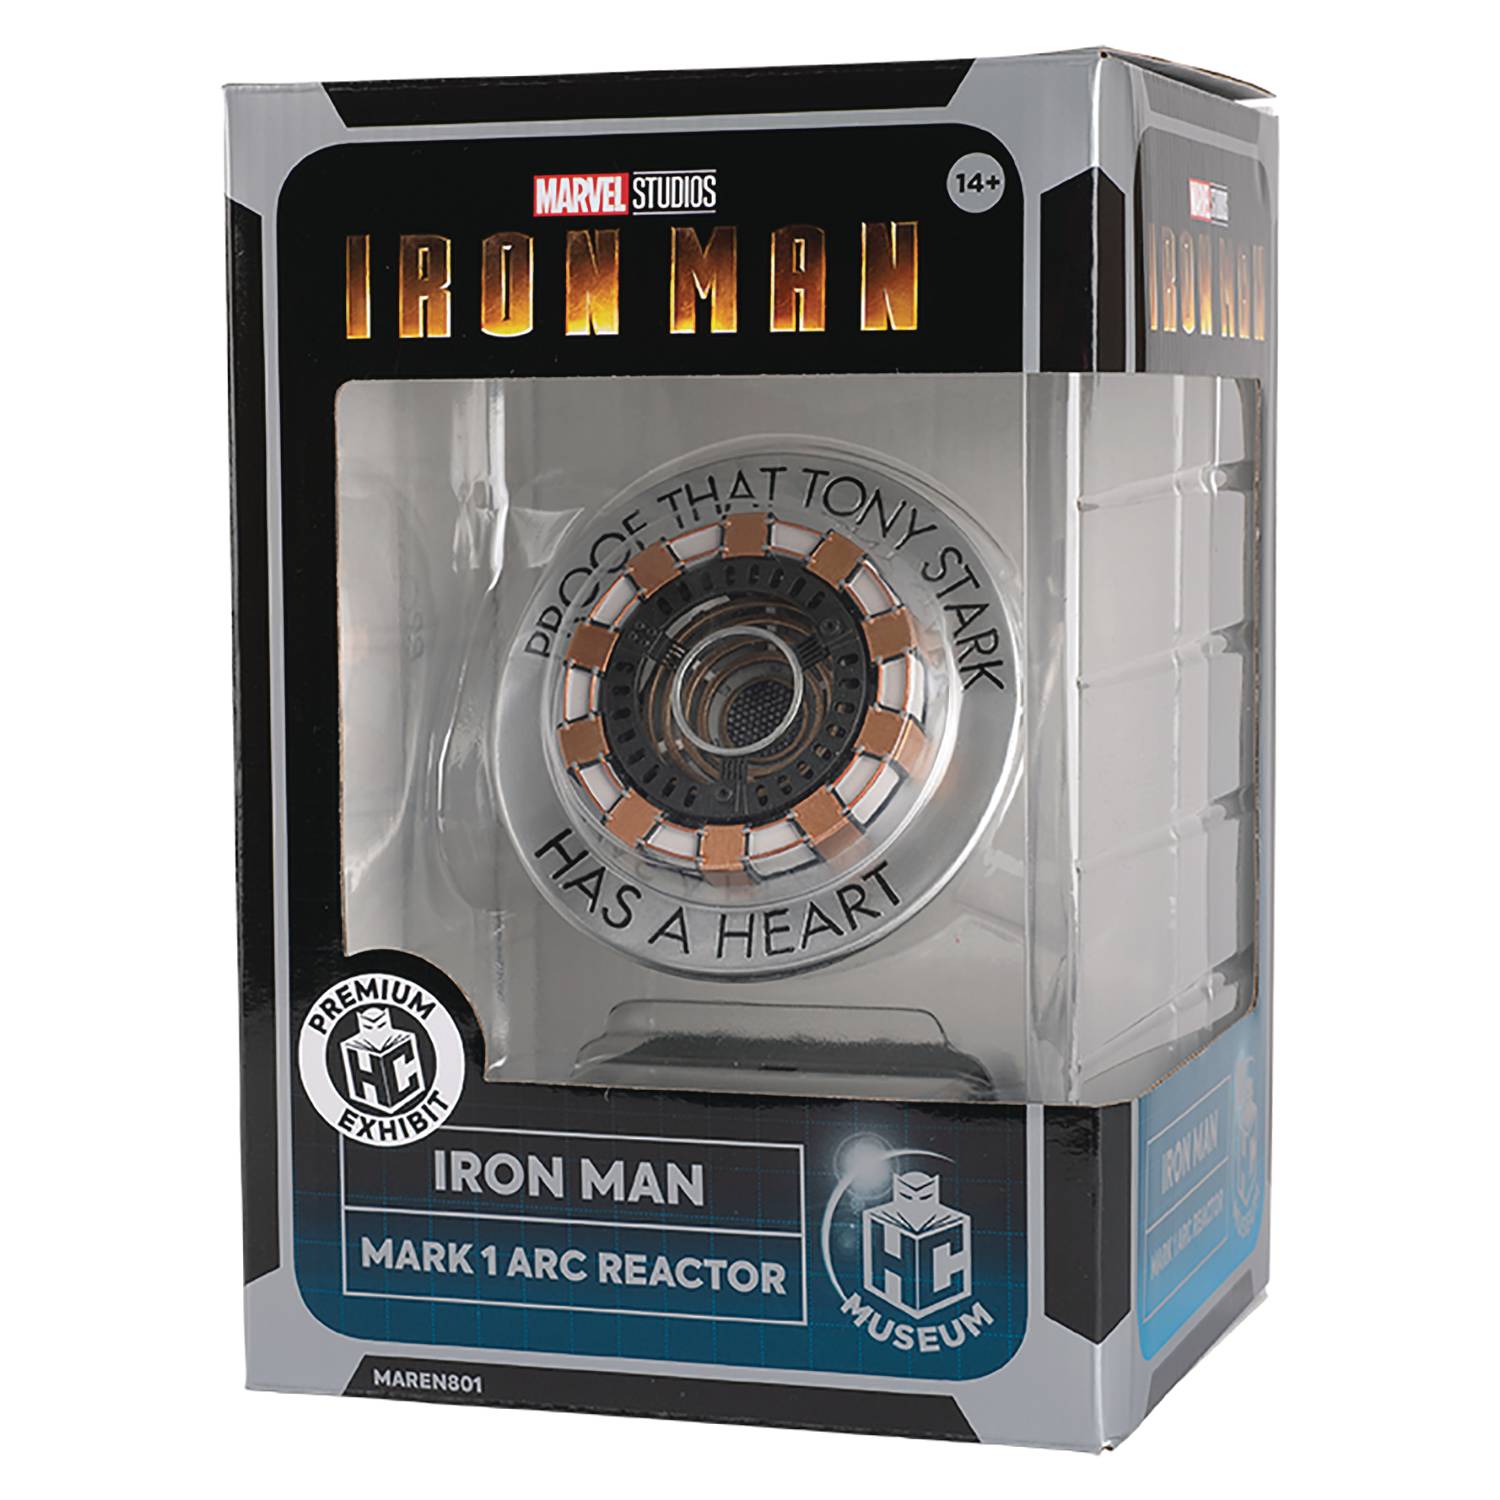 Iron man Mark 1 Arc Reactor | L.A. Mood Comics and Games